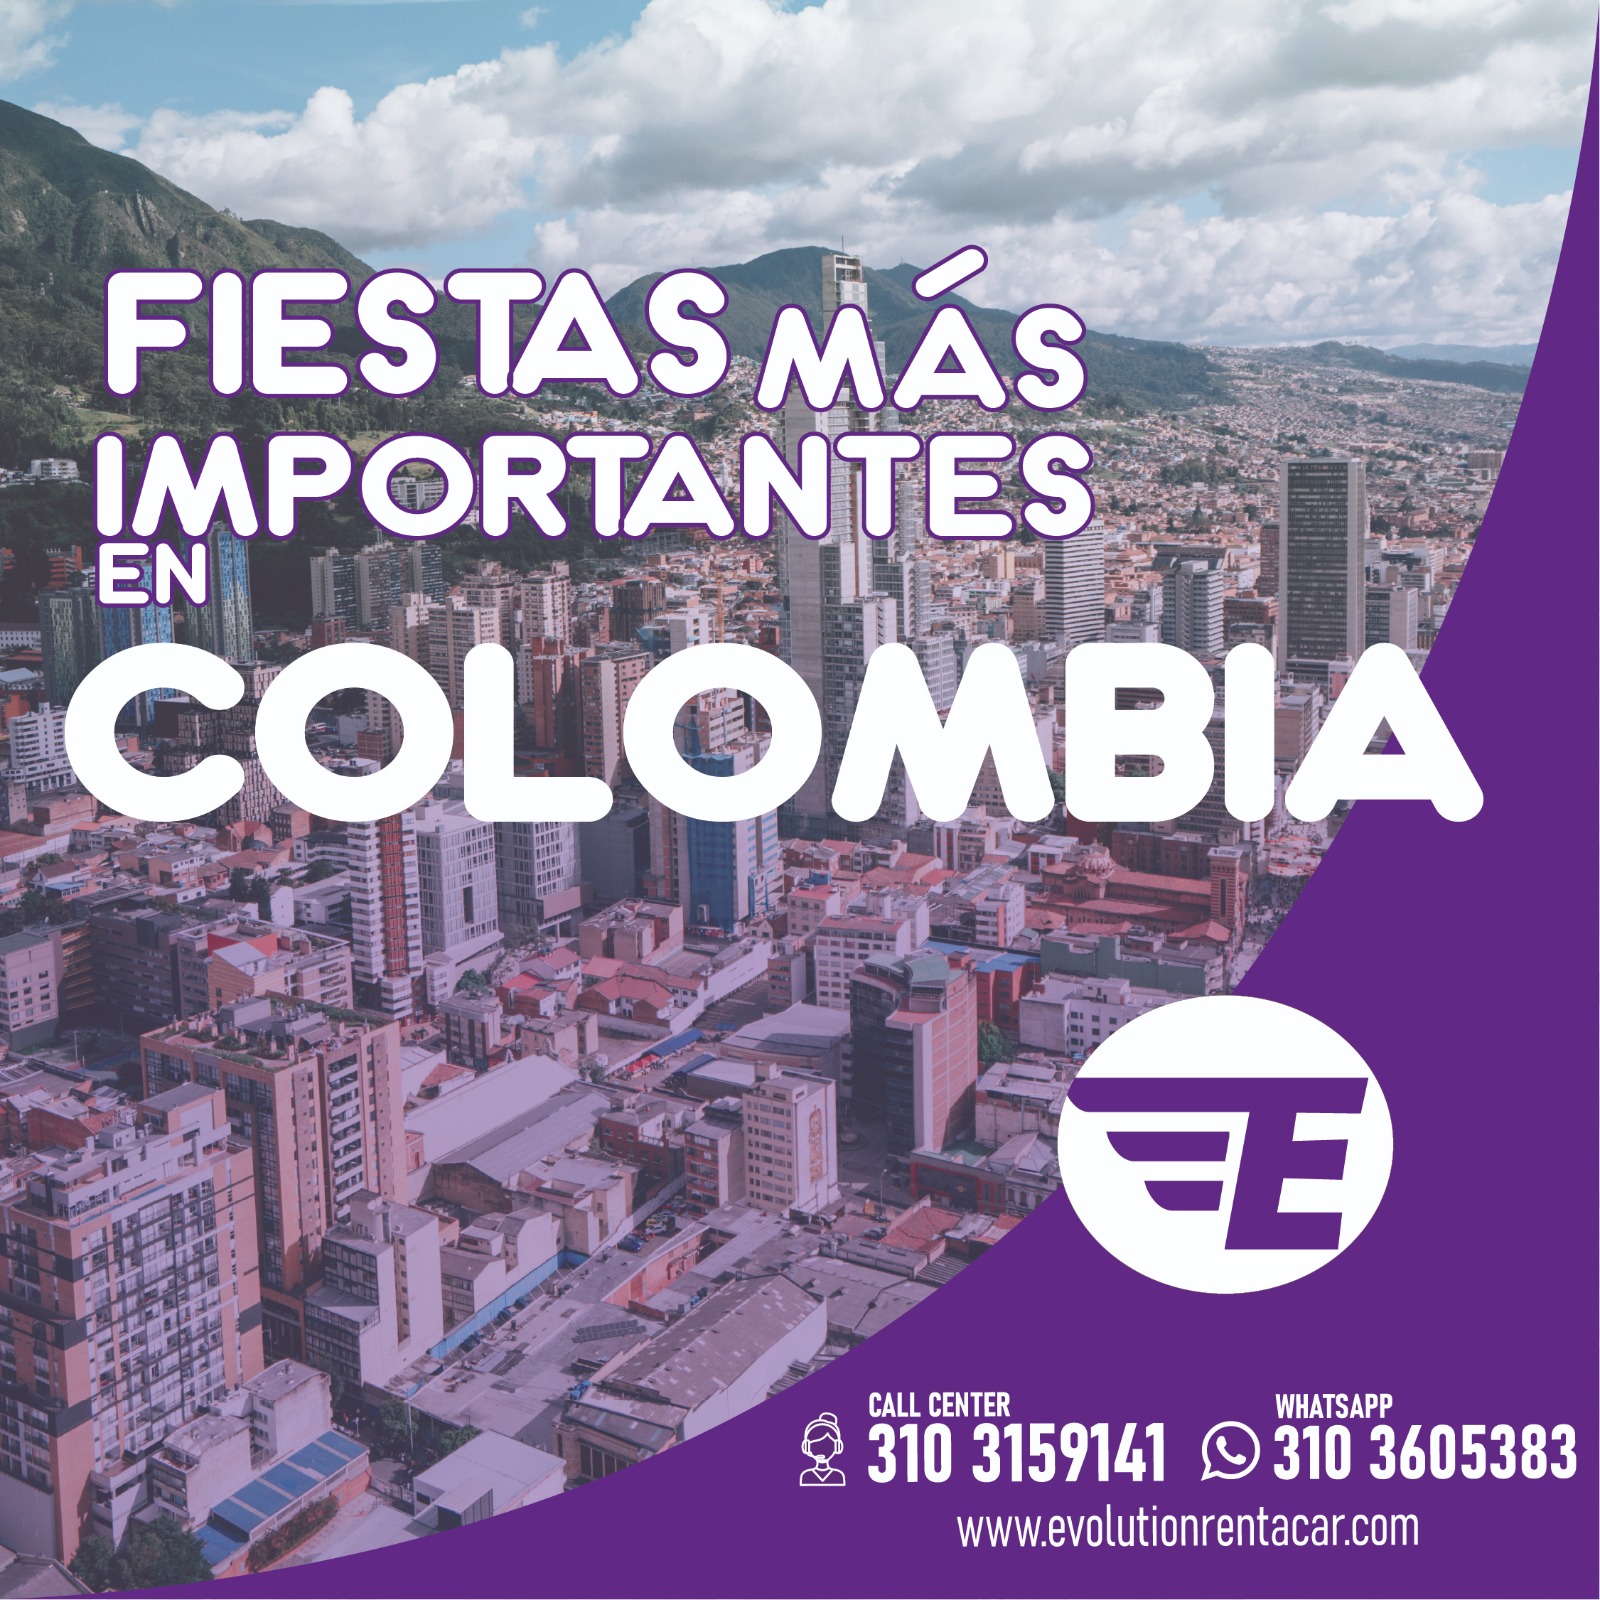 Descubre las 5 Fiestas Más importantes en Colombia